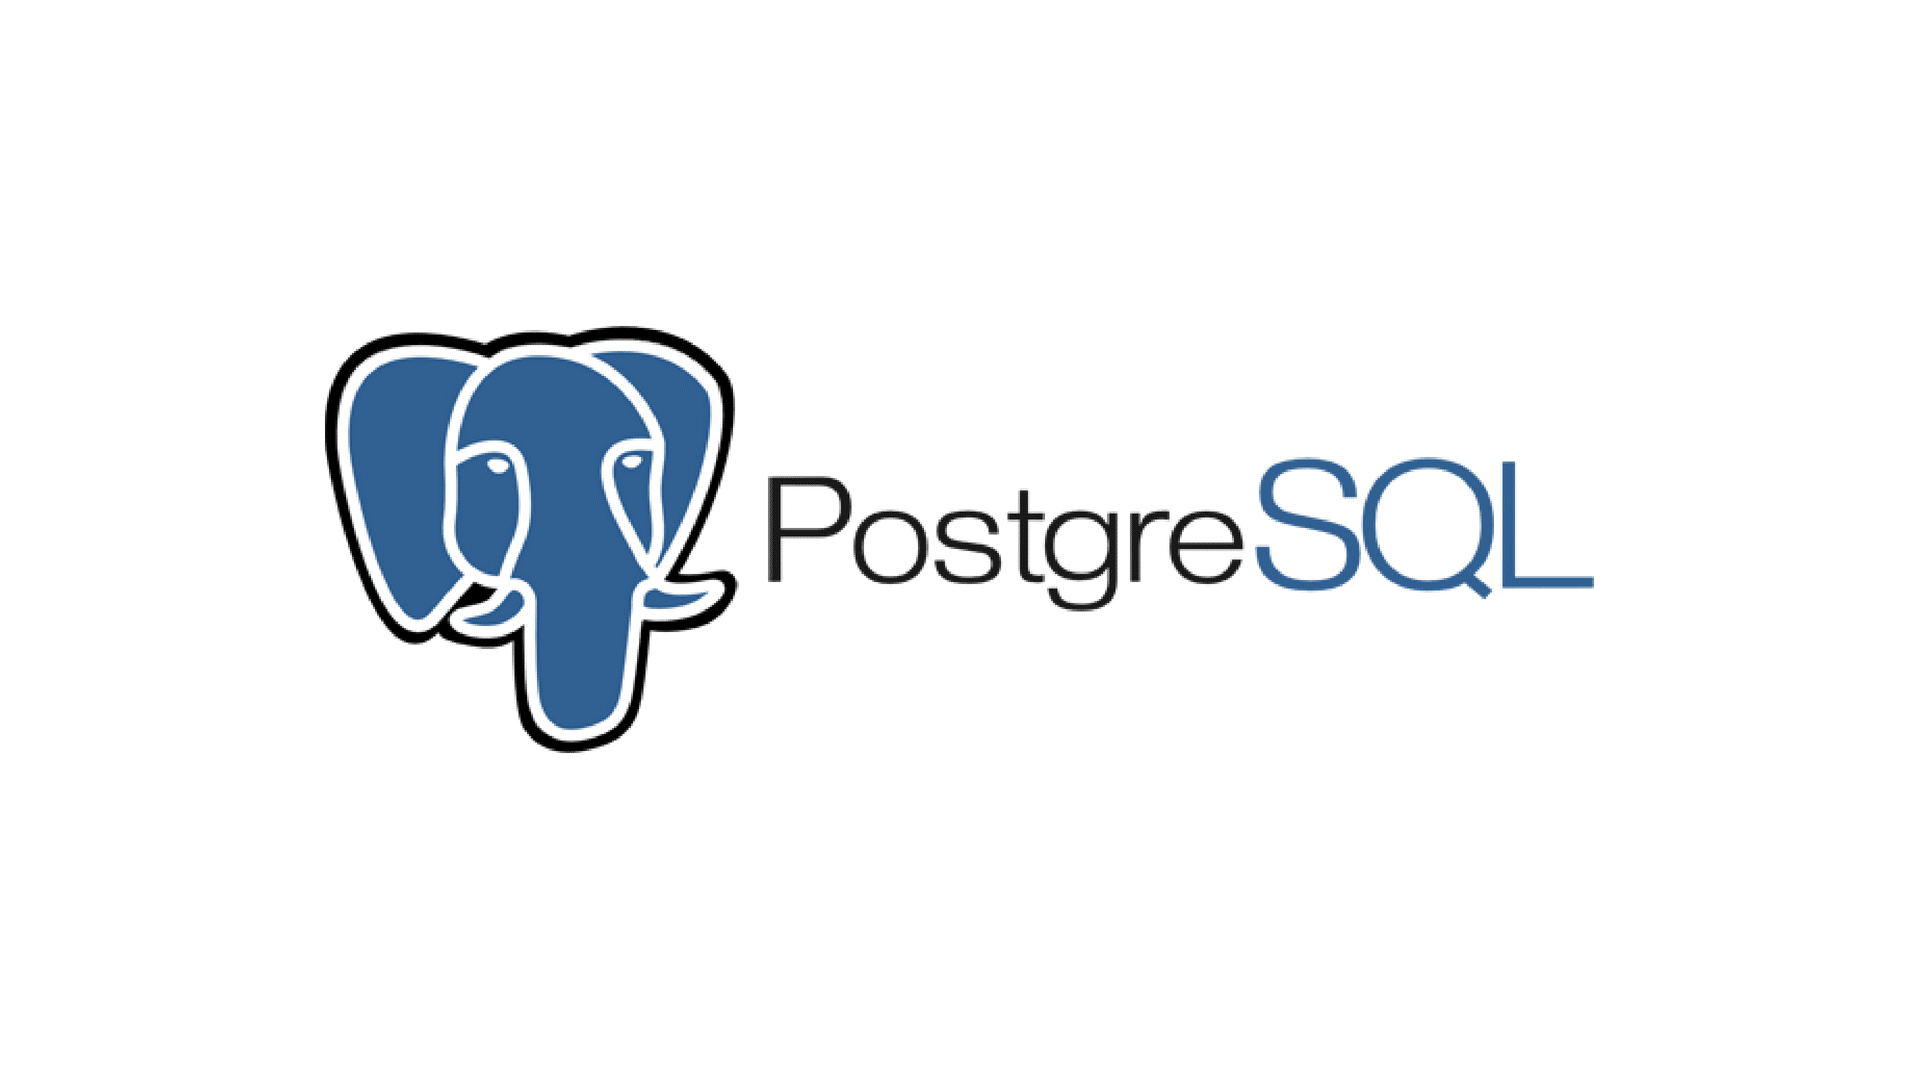 Il logo PostgreSQL, che mostra il testo sotto una testa di elefante blu stilizzata delineata in bianco e nero.